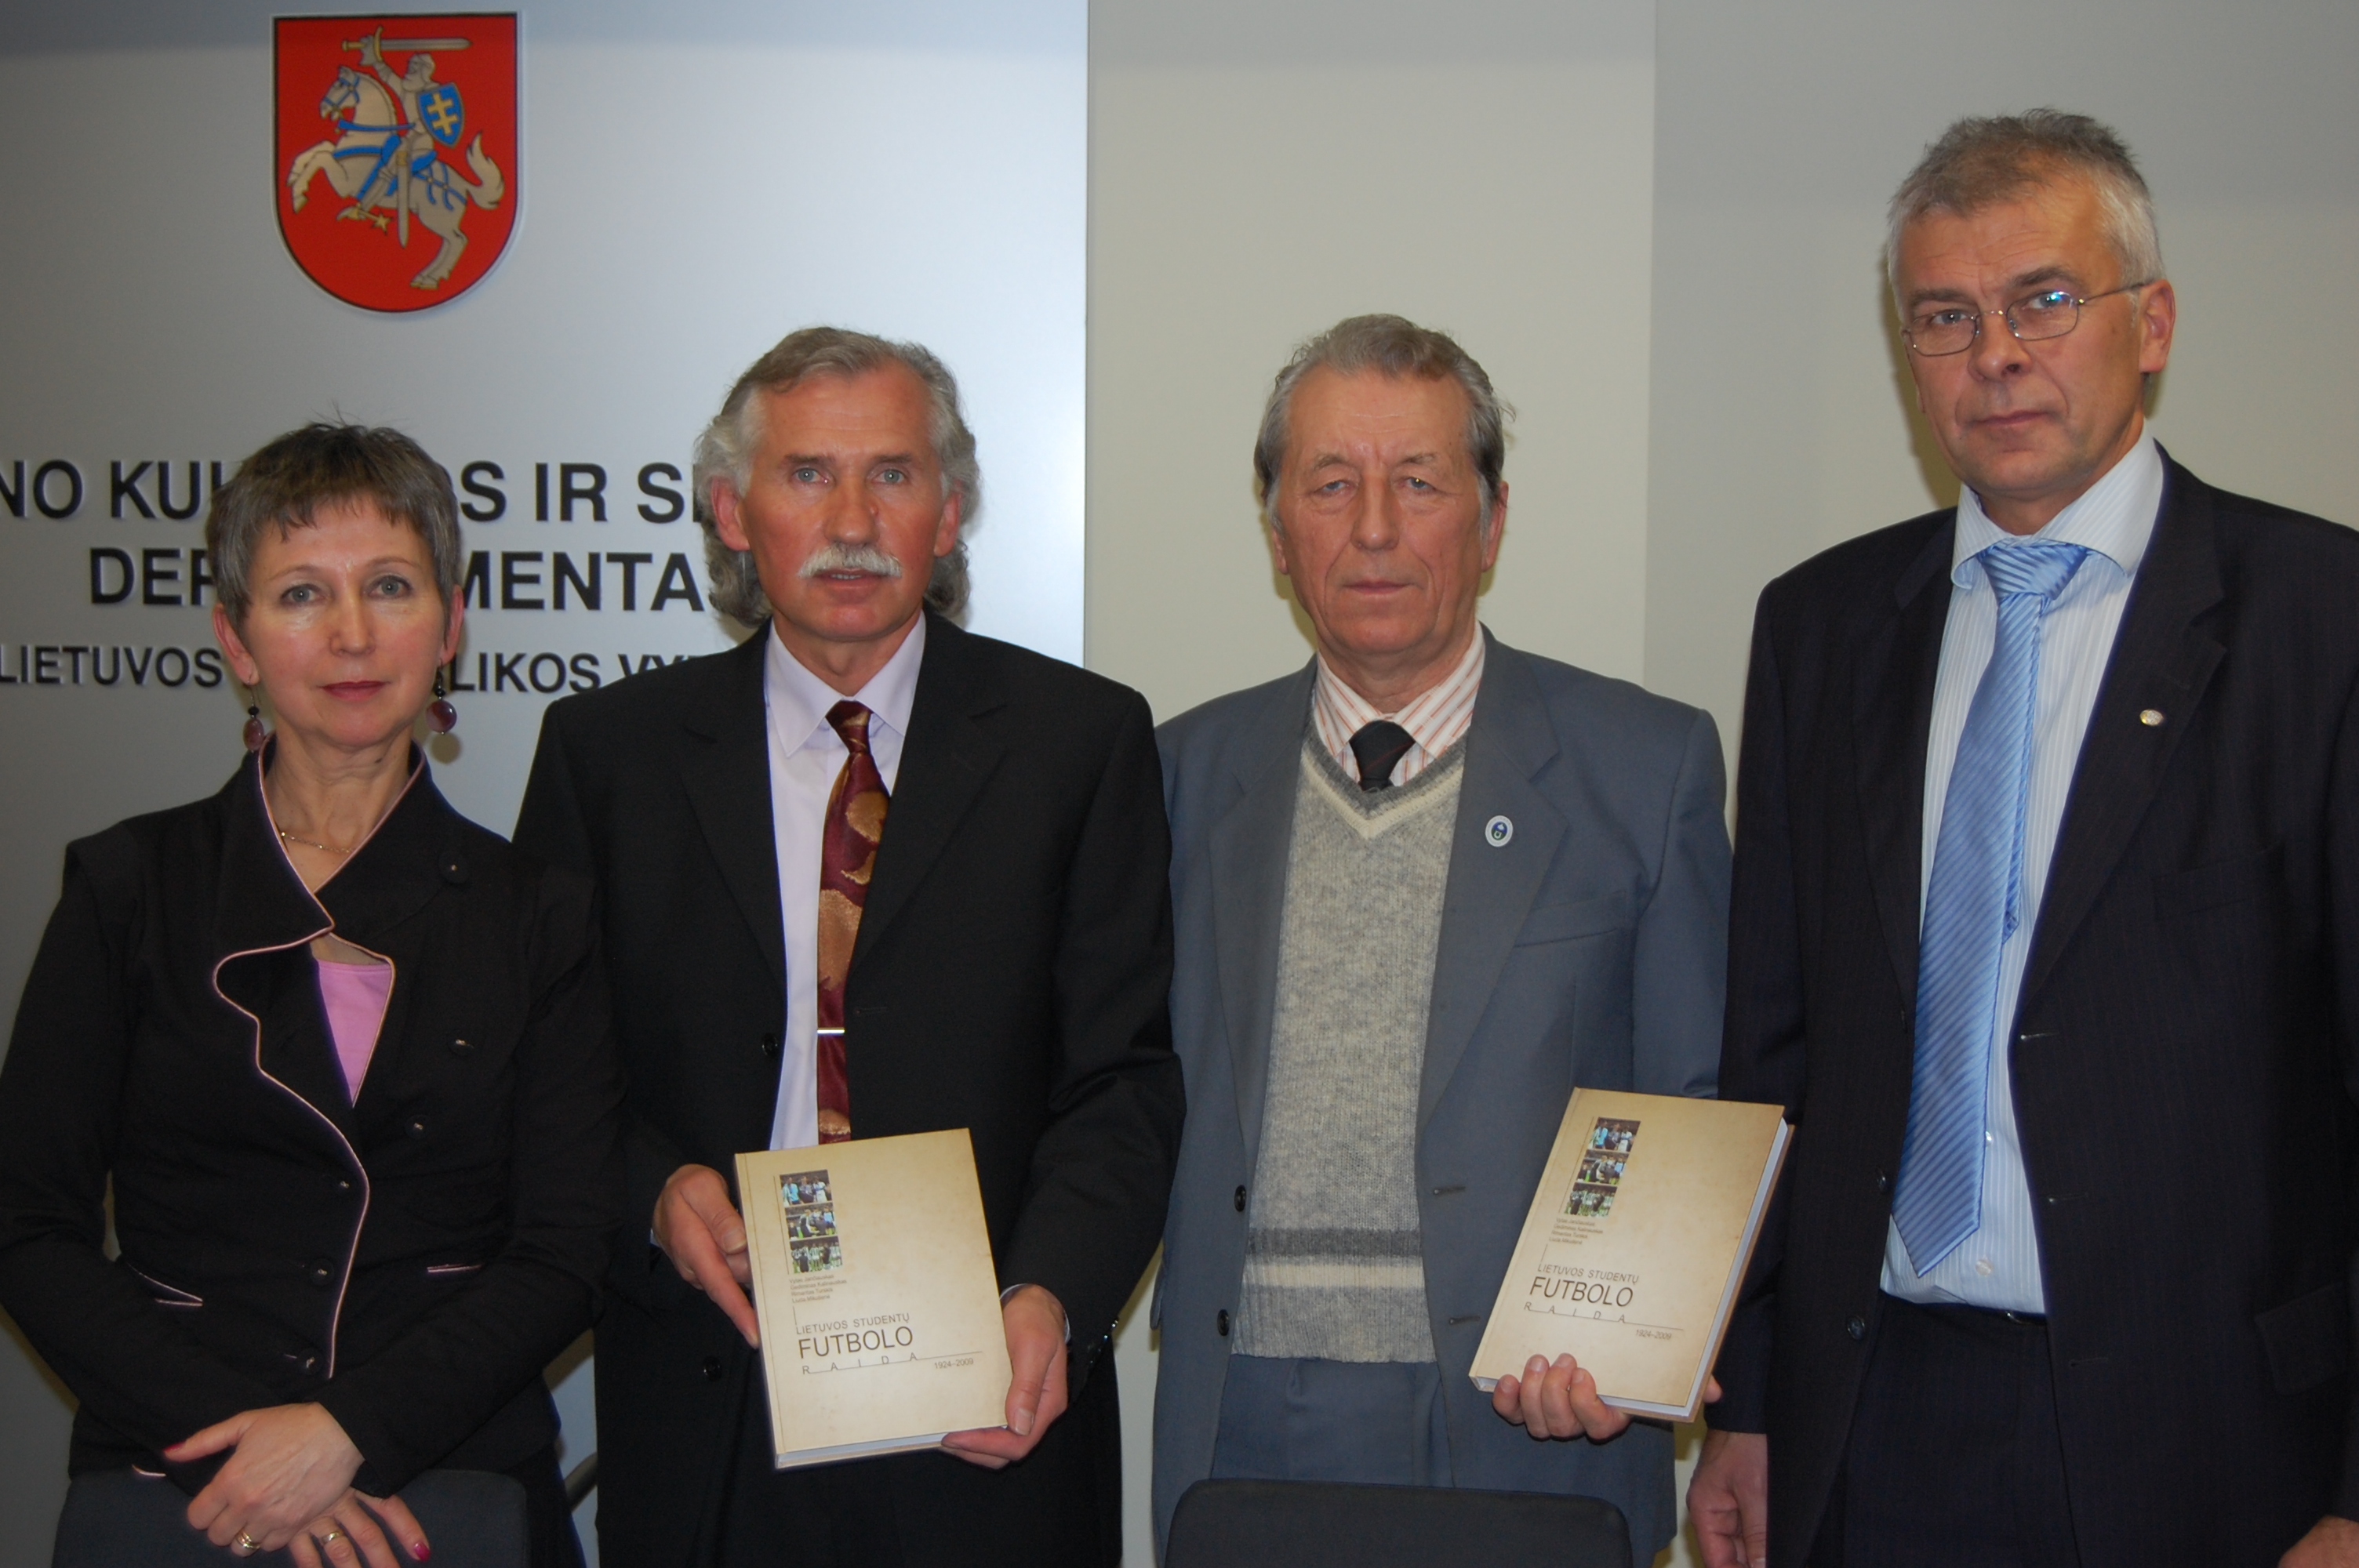 Knygos autoriai: (iš kairės) L. Mikutienė, V. Jančiauskas, G. Kalinauskas, R. Turskis. SSC archyvo nuotr.